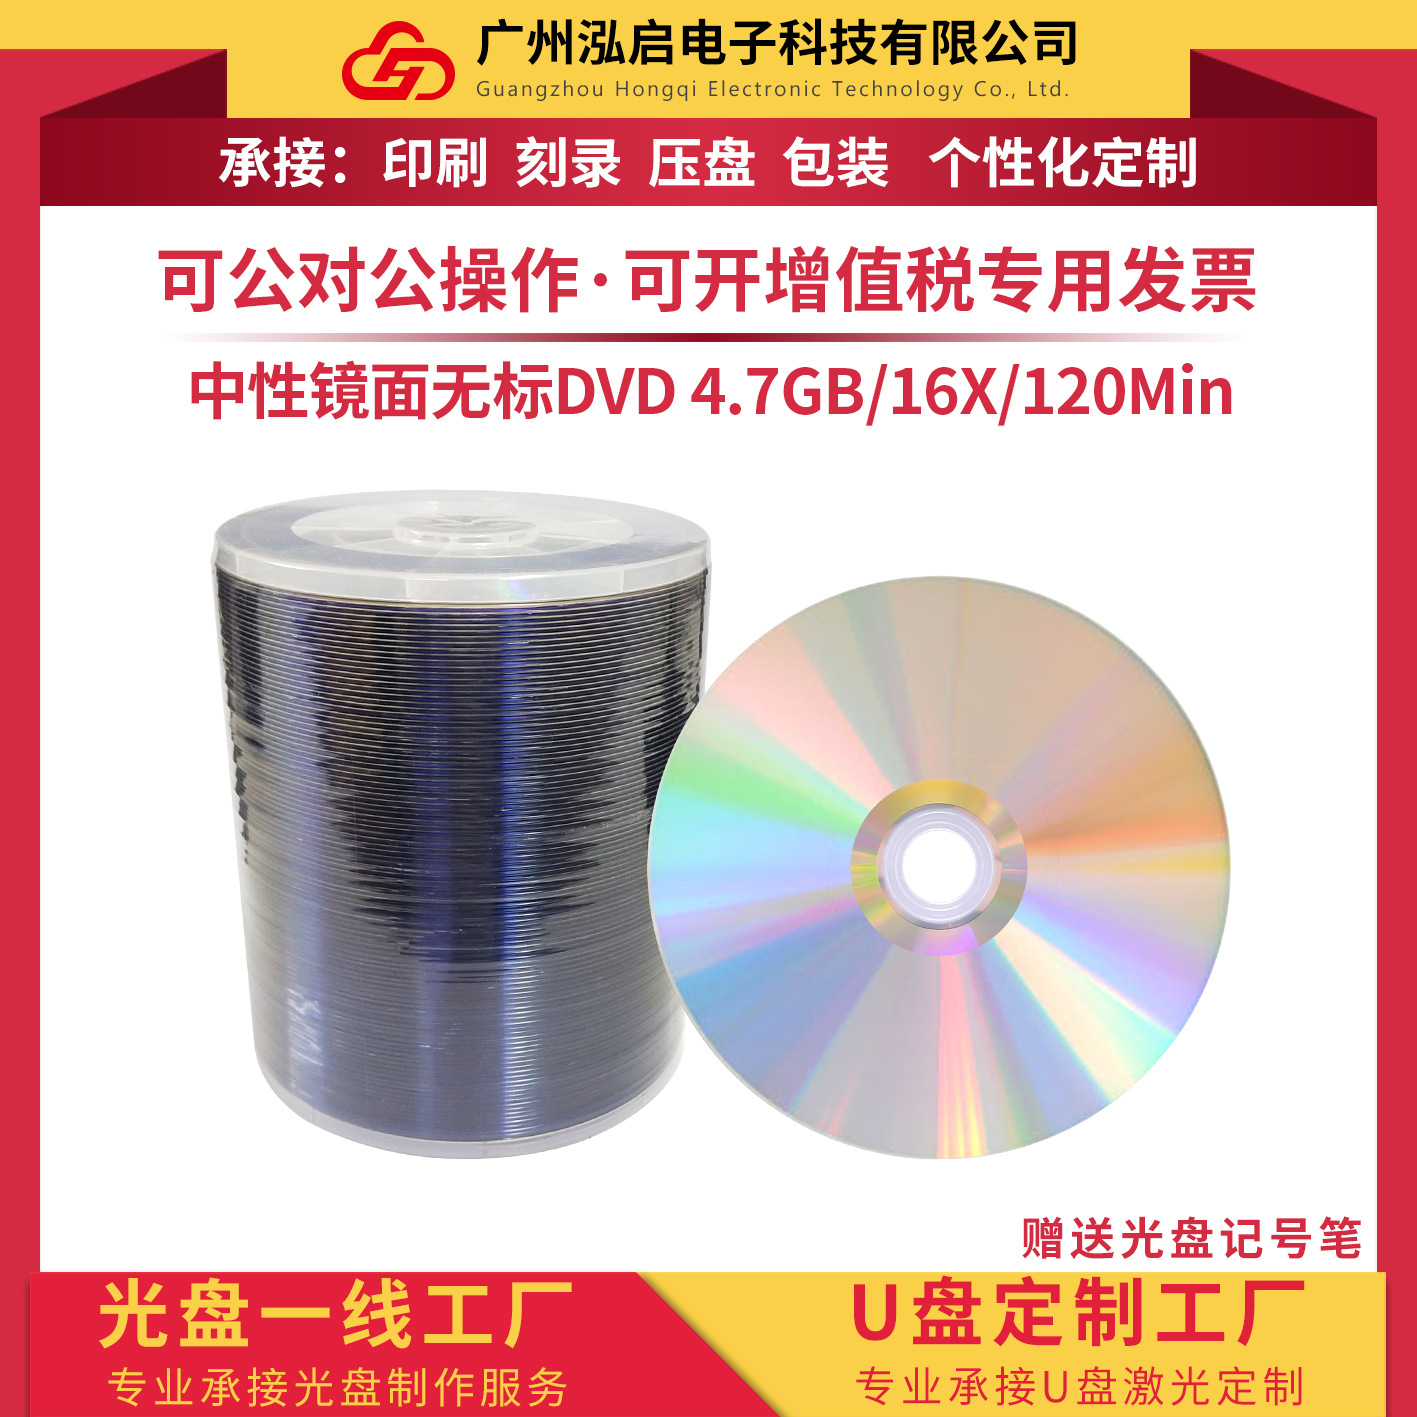 中性镜面无标DVD-R空白刻录光盘4.7GB 120Min 16X 100片简装